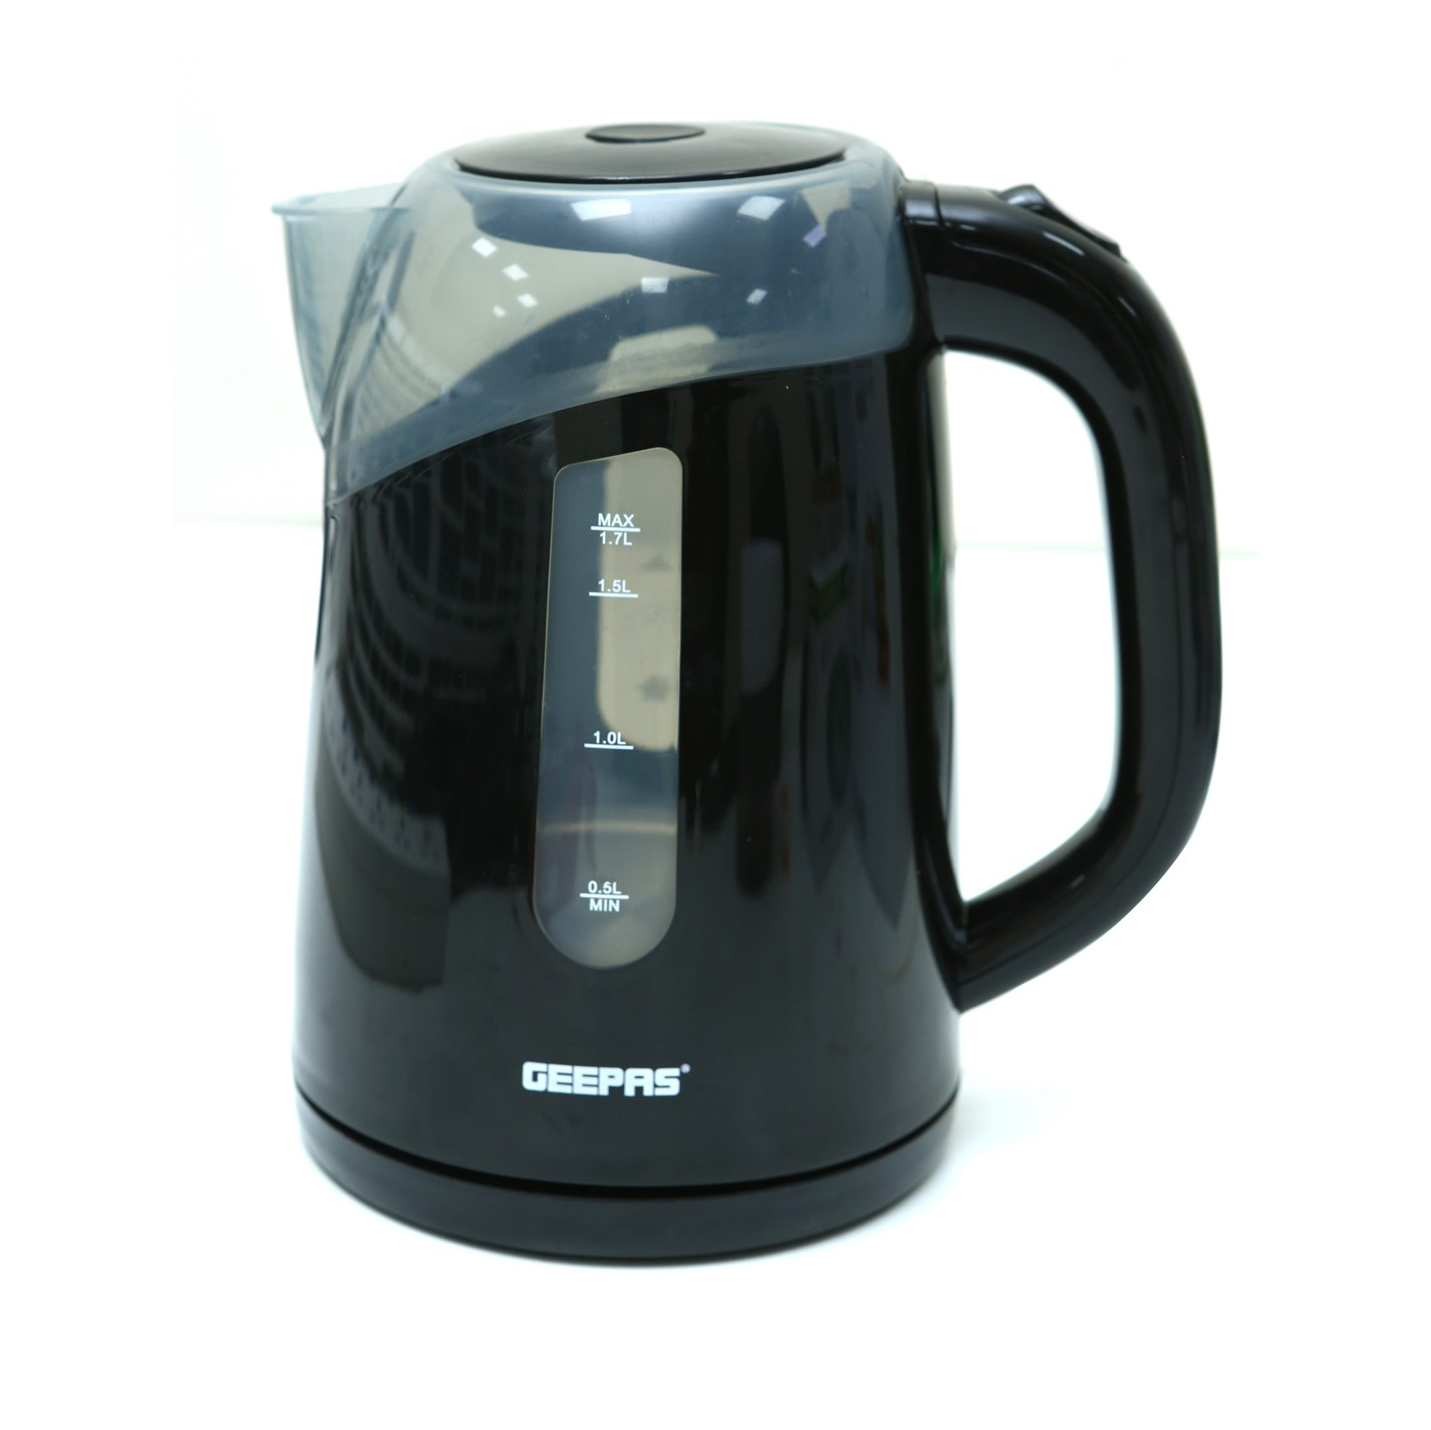 2200W 1.8L Electric kettle GlassTeapot Water kettle Hot Warm Water